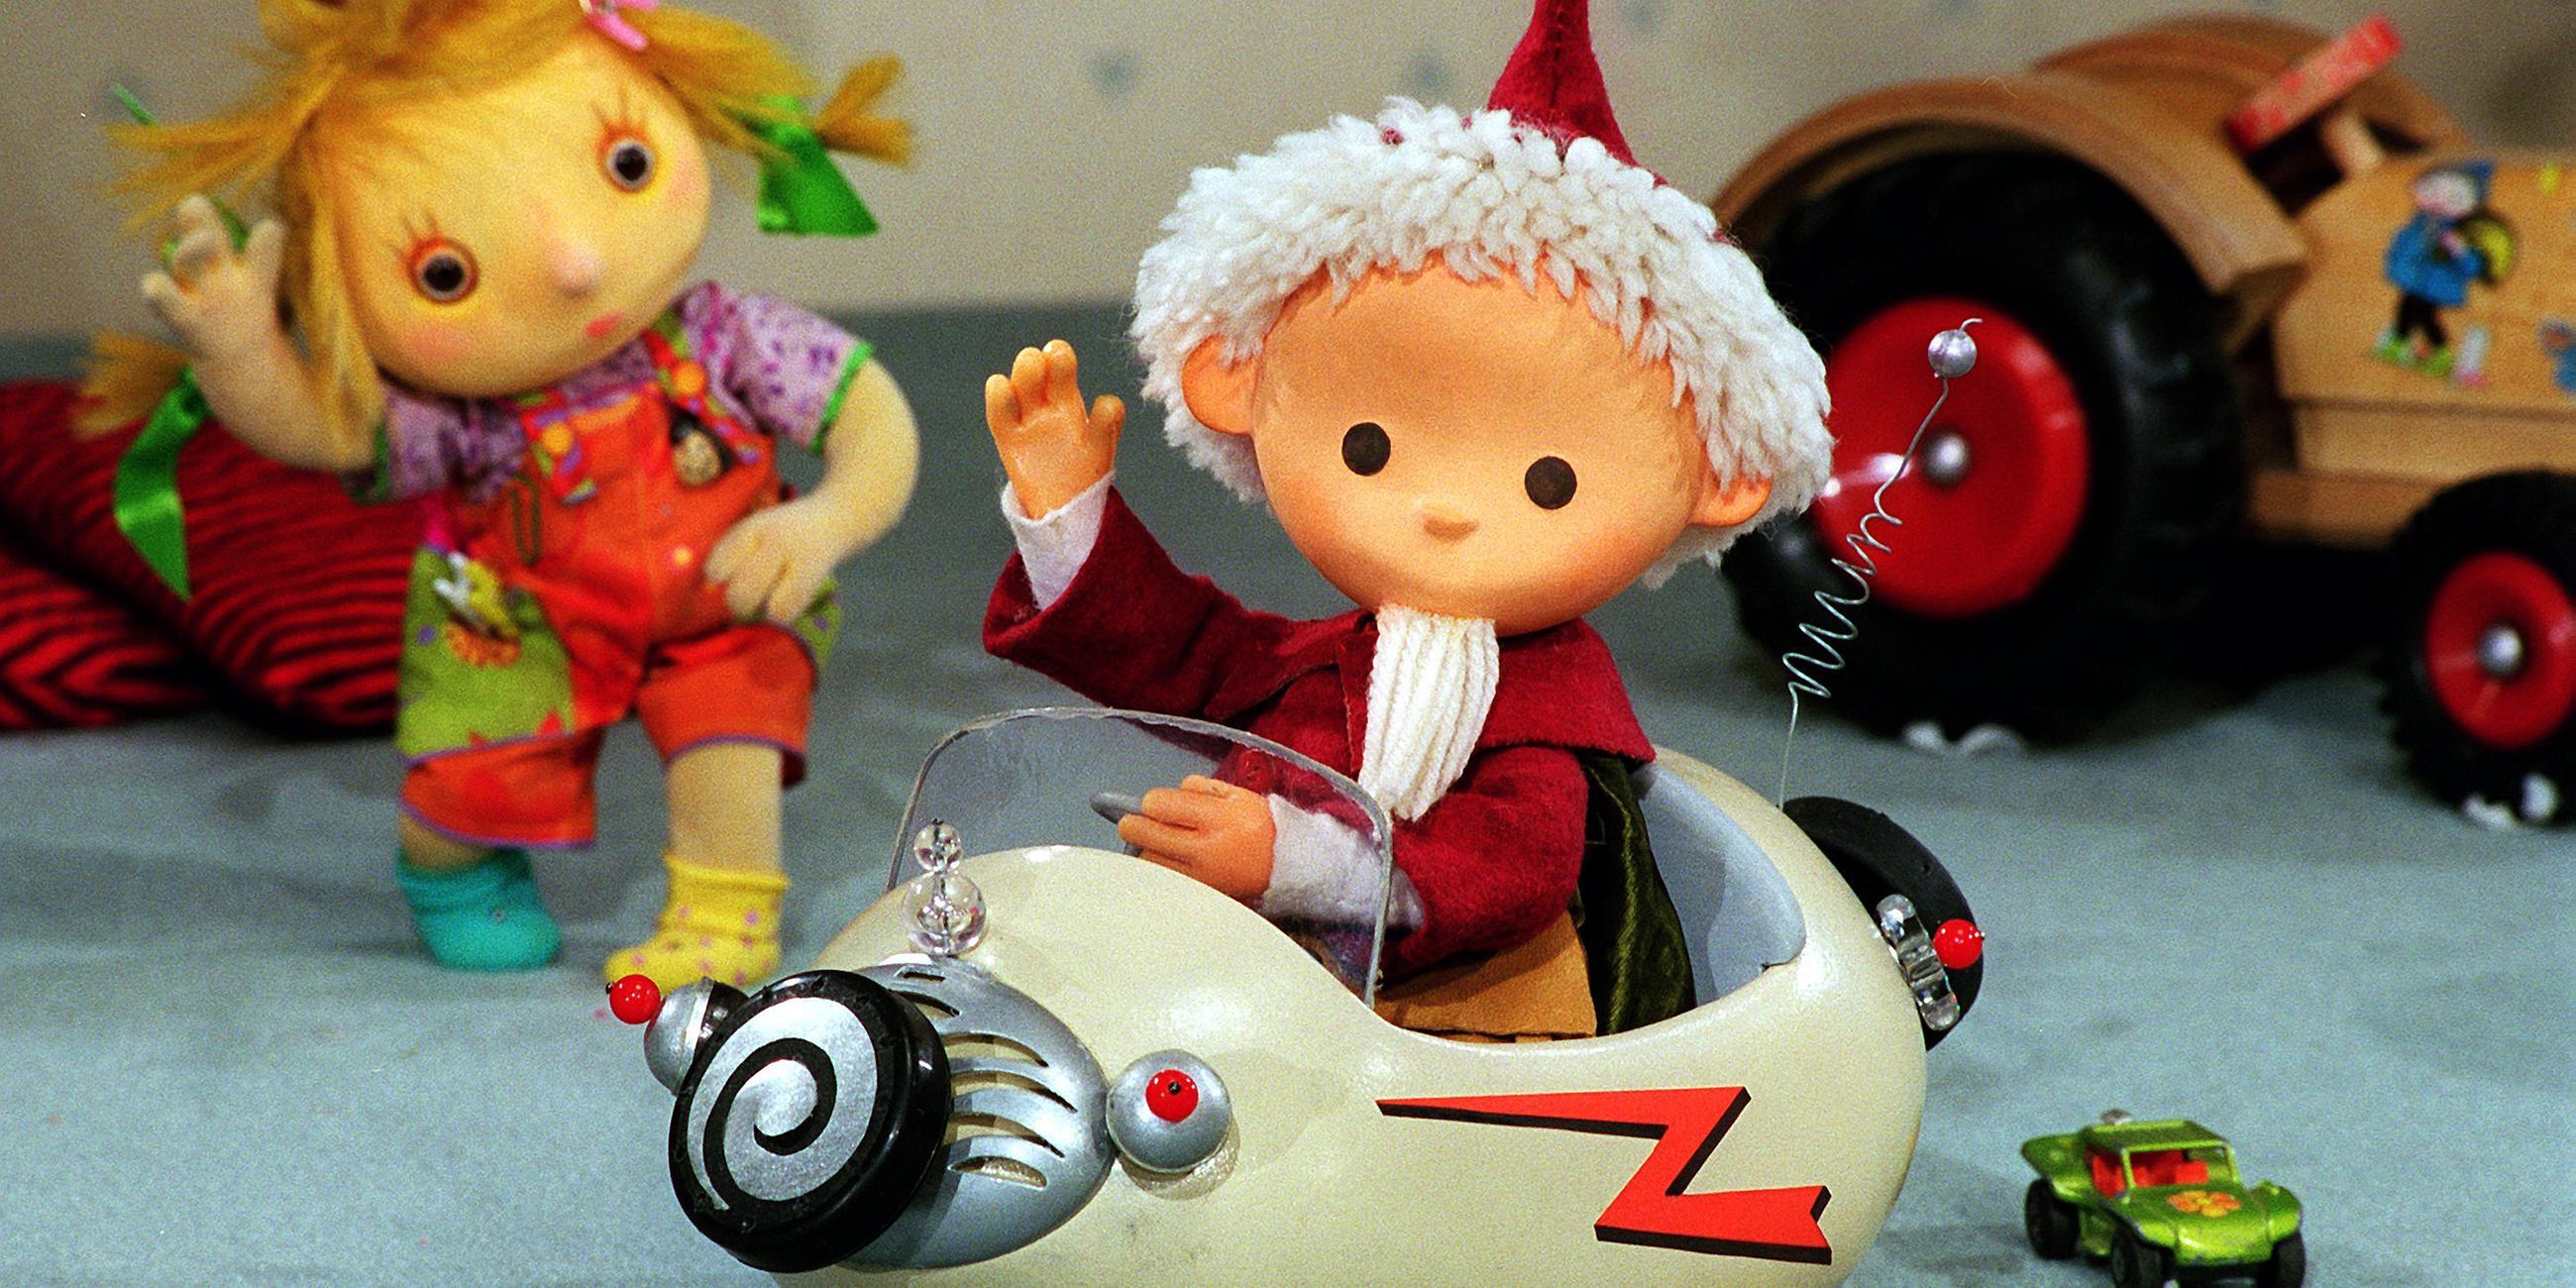 Mit dem verrückten Auto "Kidrunner" fährt das Sandmännchen durch das Kinderzimmer (Archivfoto vom 19.02.1997). 